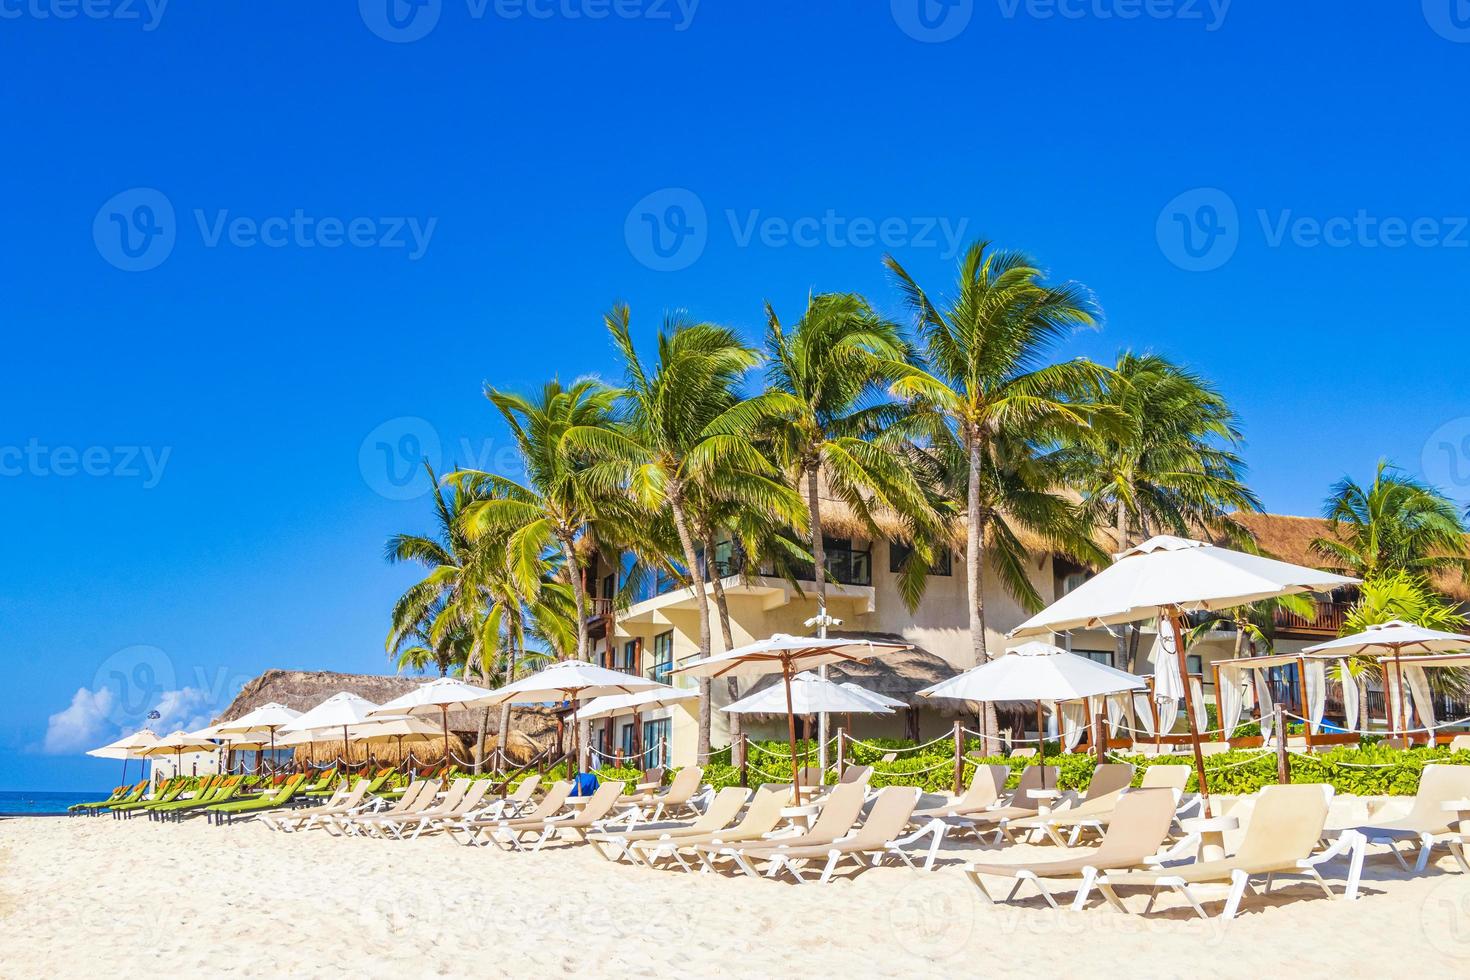 palme ombrelloni sedie a sdraio beach resort playa del carmen messico. foto